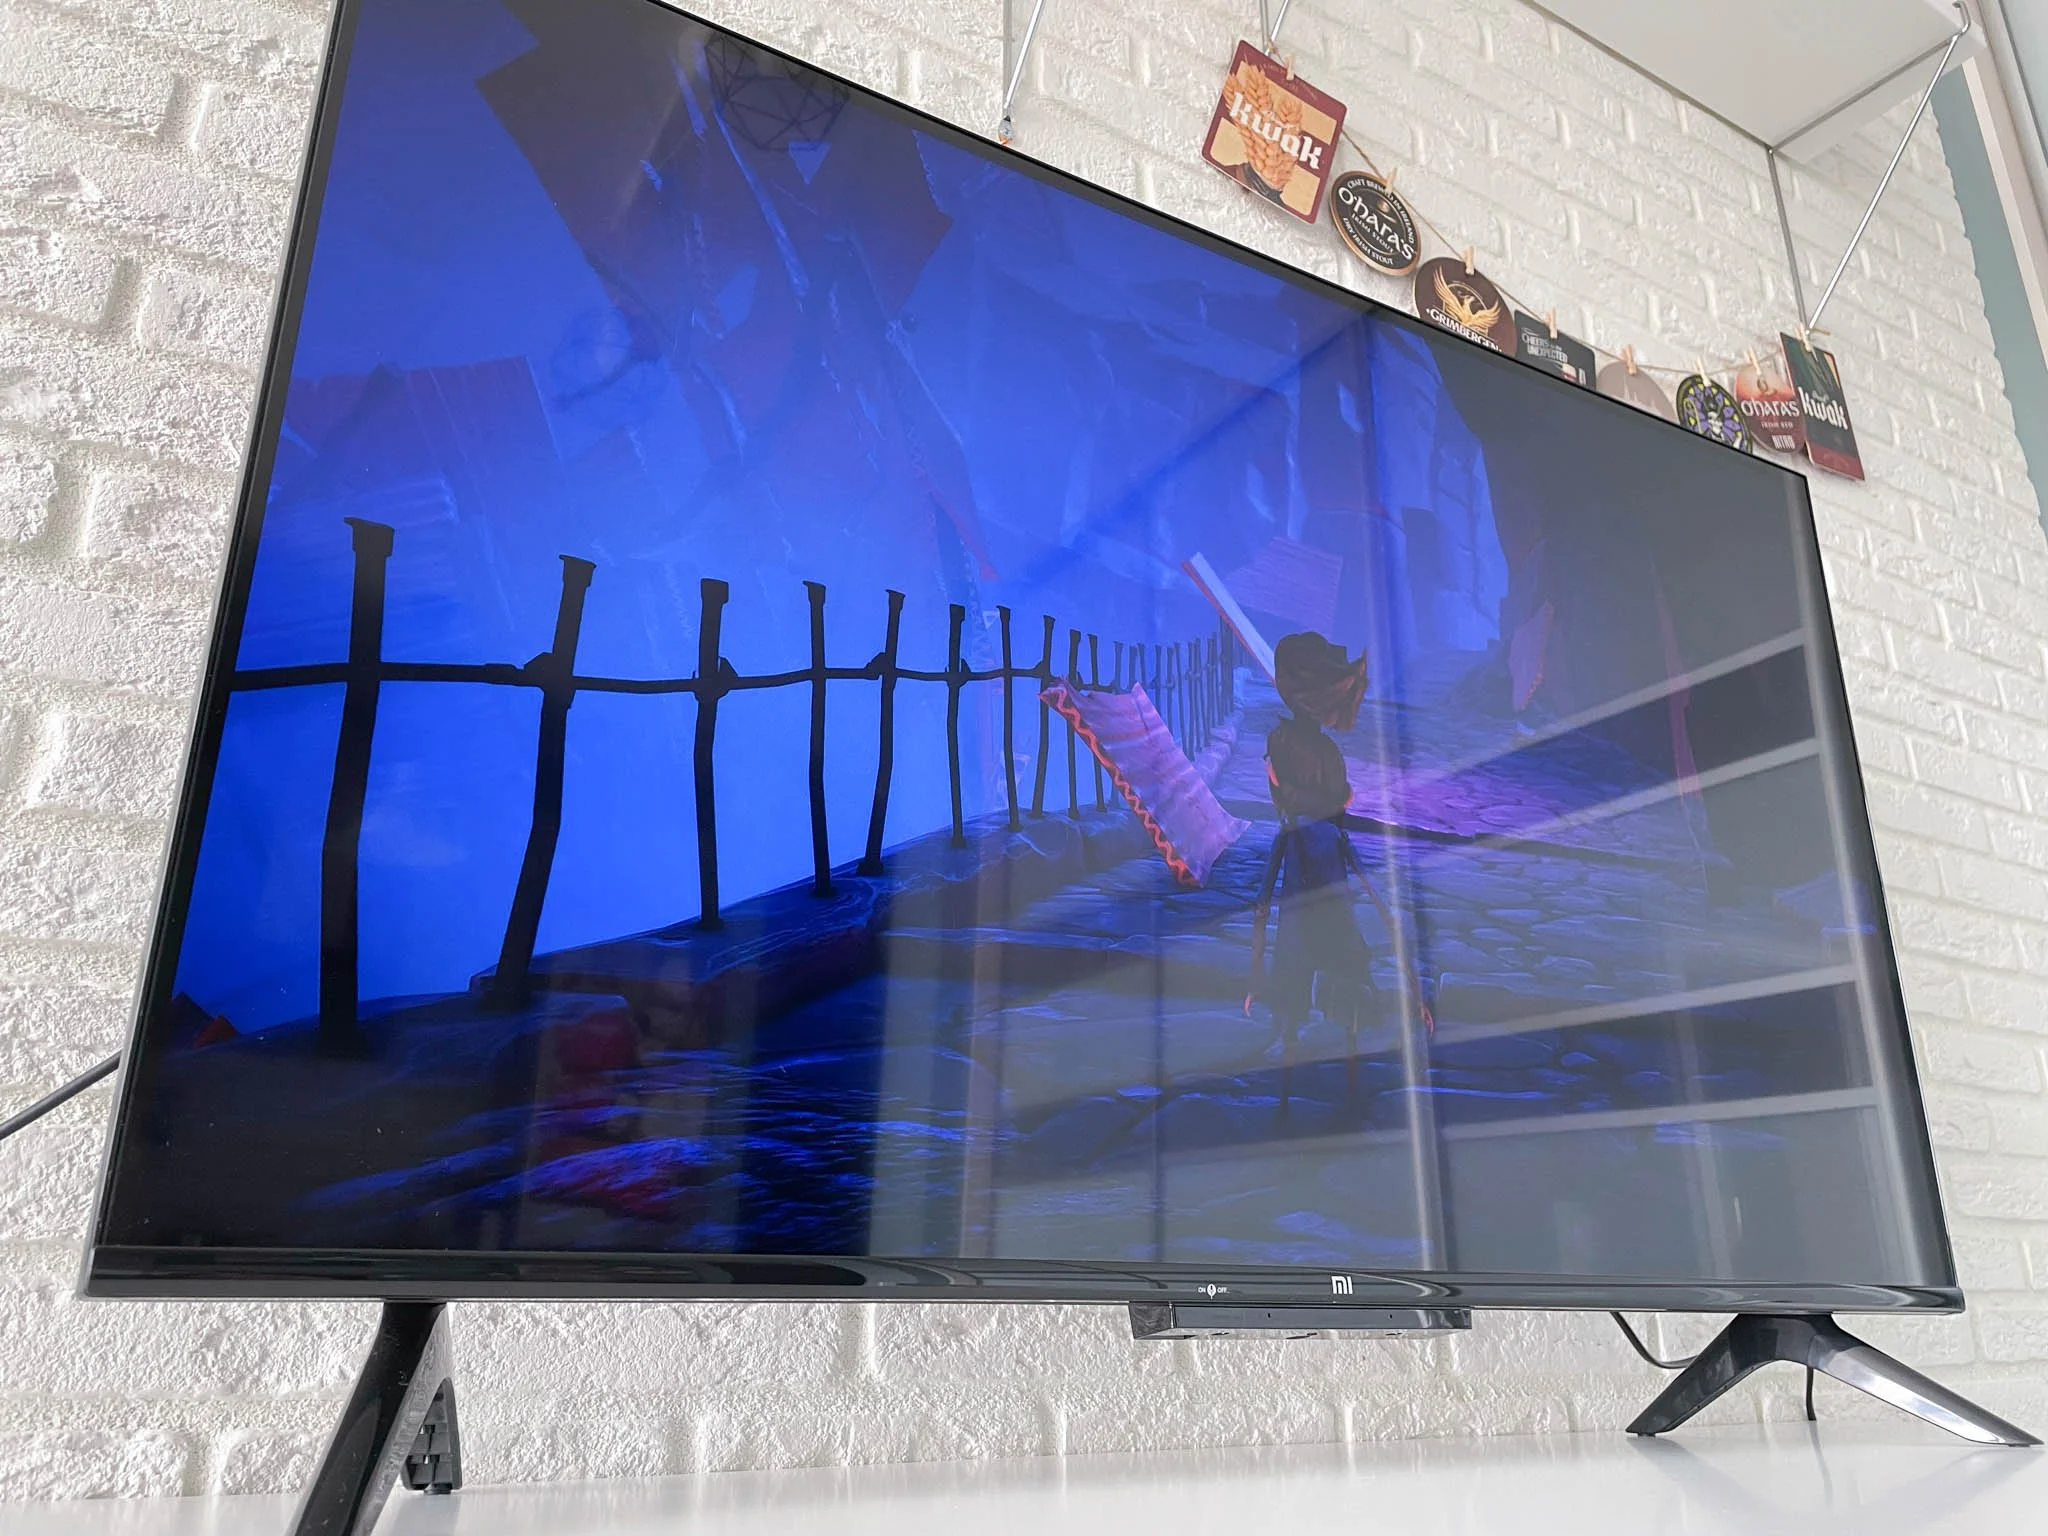 Обзор Xiaomi Mi TV P1: бюджетный 43-дюймовый 4К-телевизор для игр и кино - фото 12